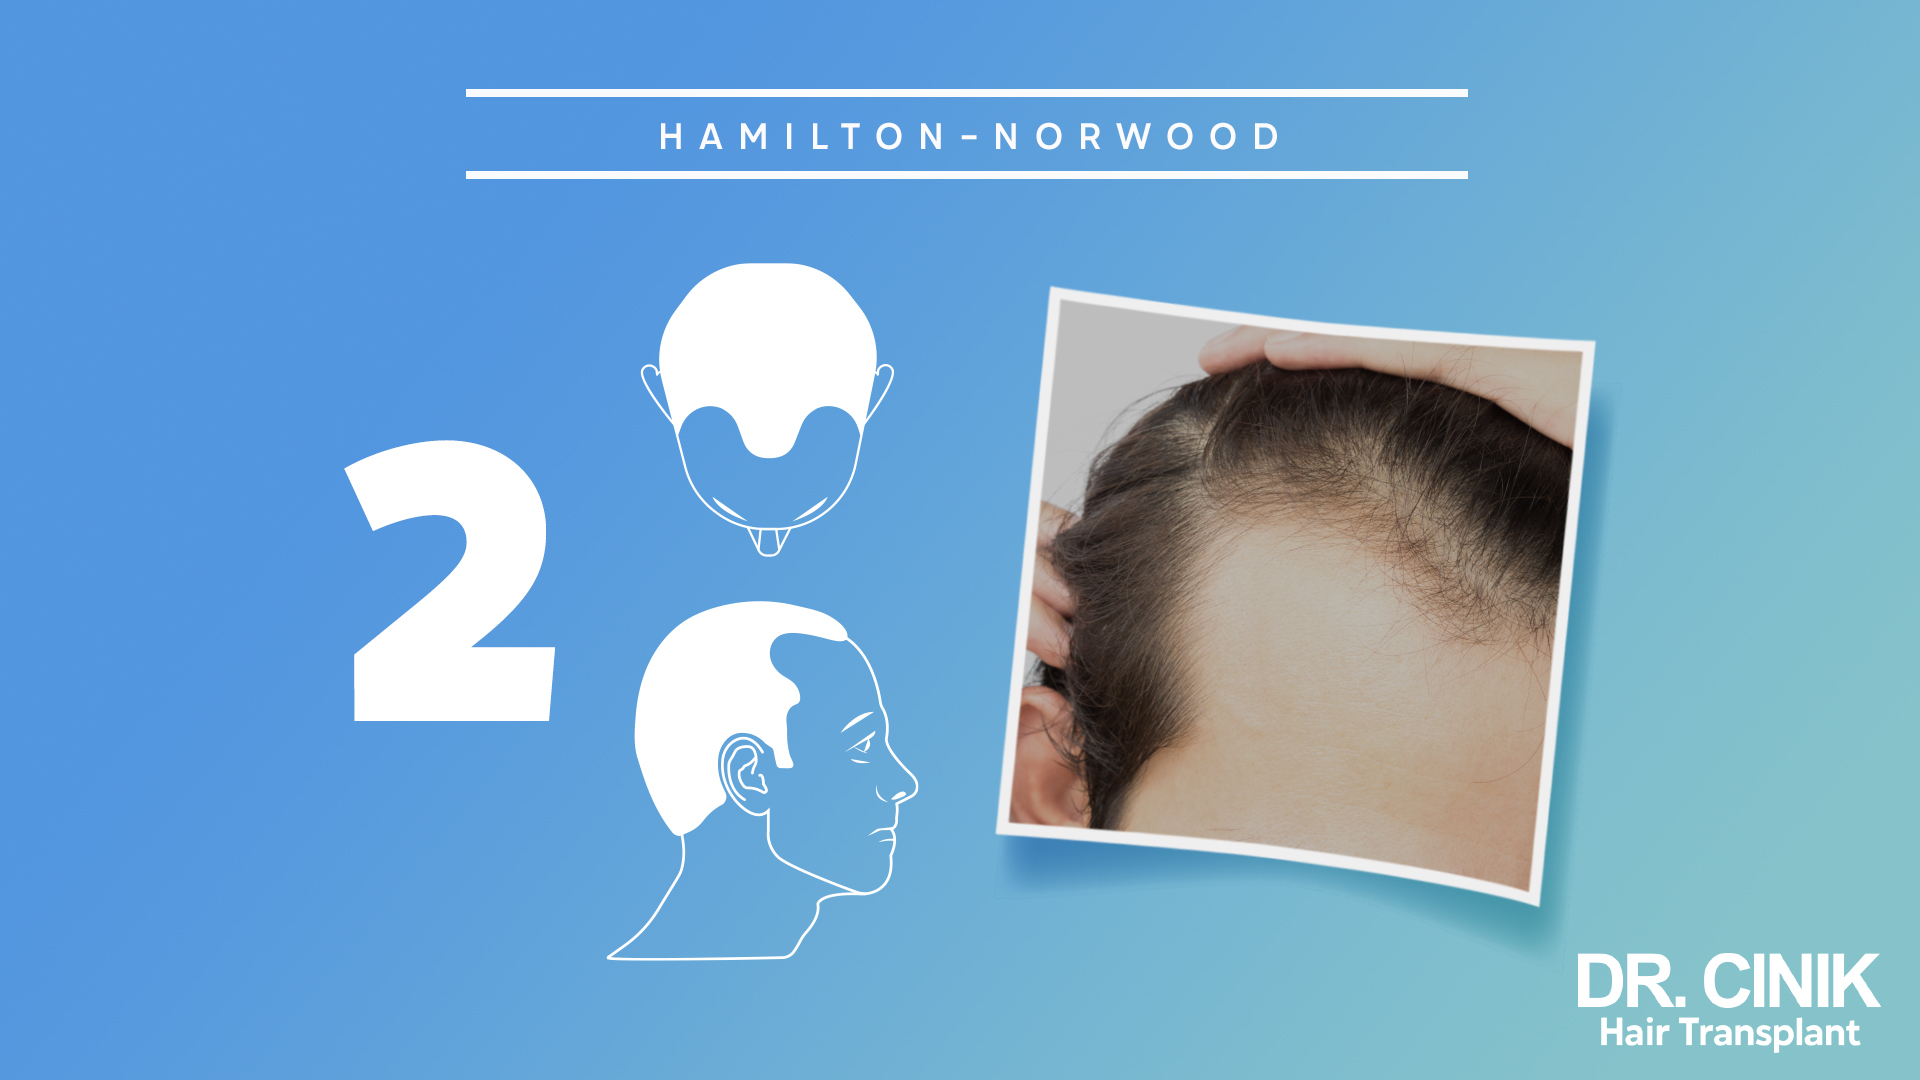 
Este gráfico representa la etapa 2 de la escala "HAMILTON-NORWOOD", que se utiliza para categorizar los niveles de pérdida de cabello en hombres.

El fondo es de color azul claro con un número grande "2" en el lado izquierdo, indicando que se trata de la segunda etapa de la escala. En el centro, hay dos ilustraciones en blanco: la superior muestra la parte superior de una cabeza con una ligera pérdida de cabello en la coronilla y la inferior es un perfil de un hombre que también indica una leve pérdida de cabello.

A la derecha, hay una imagen real de la parte superior de la cabeza de una persona, mostrando una pérdida de cabello más notable en la coronilla. La piel del cuero cabelludo es claramente visible.

En la esquina inferior derecha, aparece el logo "DR. CINIK Hair Transplant". 